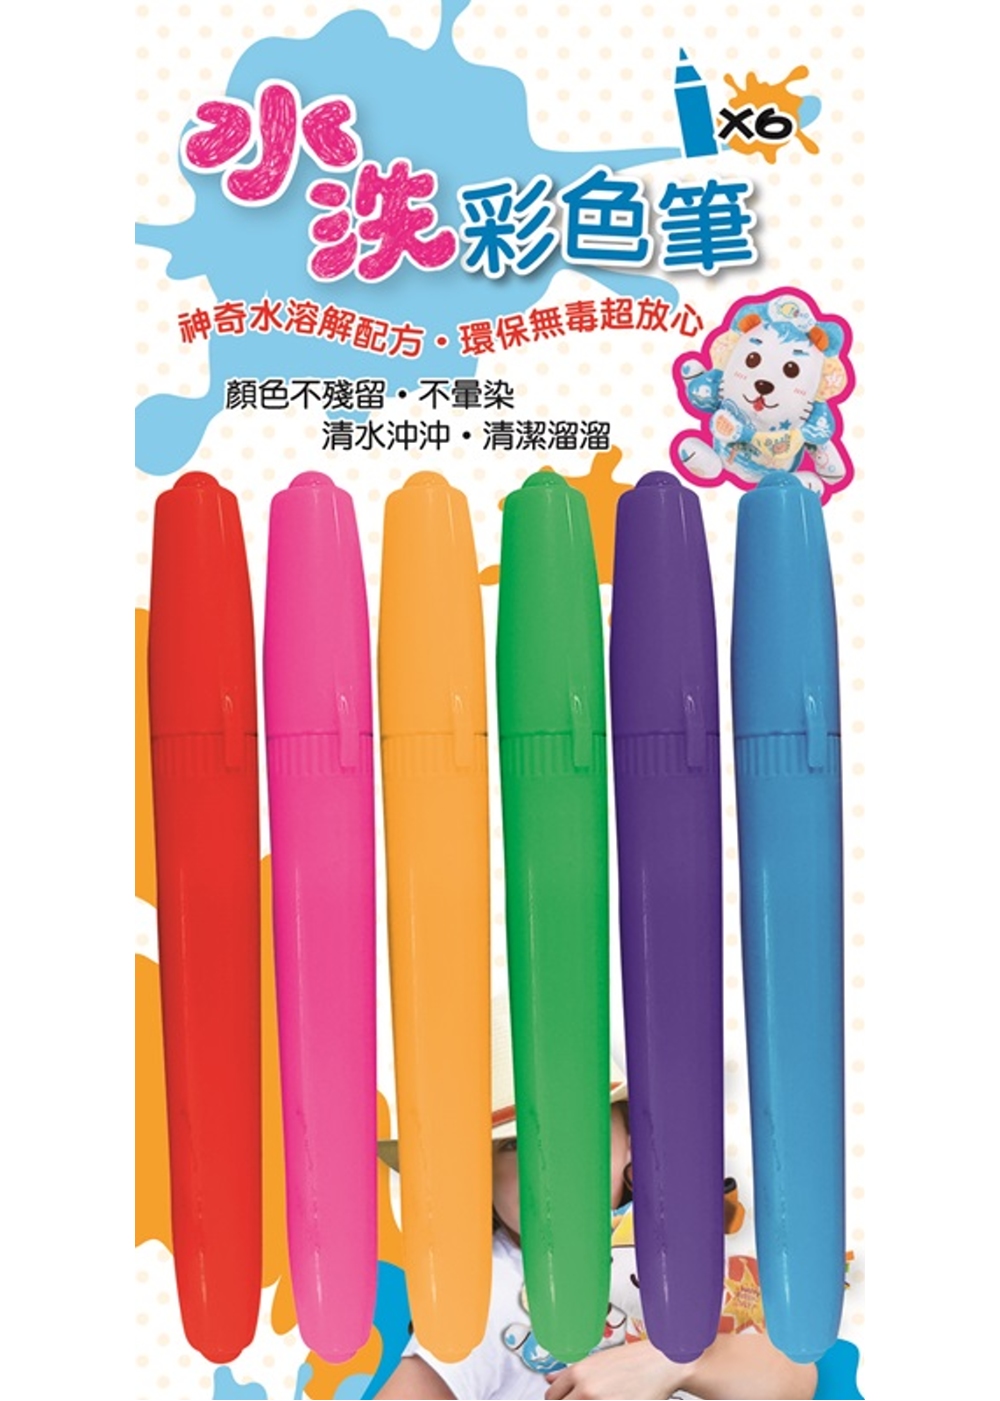 6色水洗彩色筆